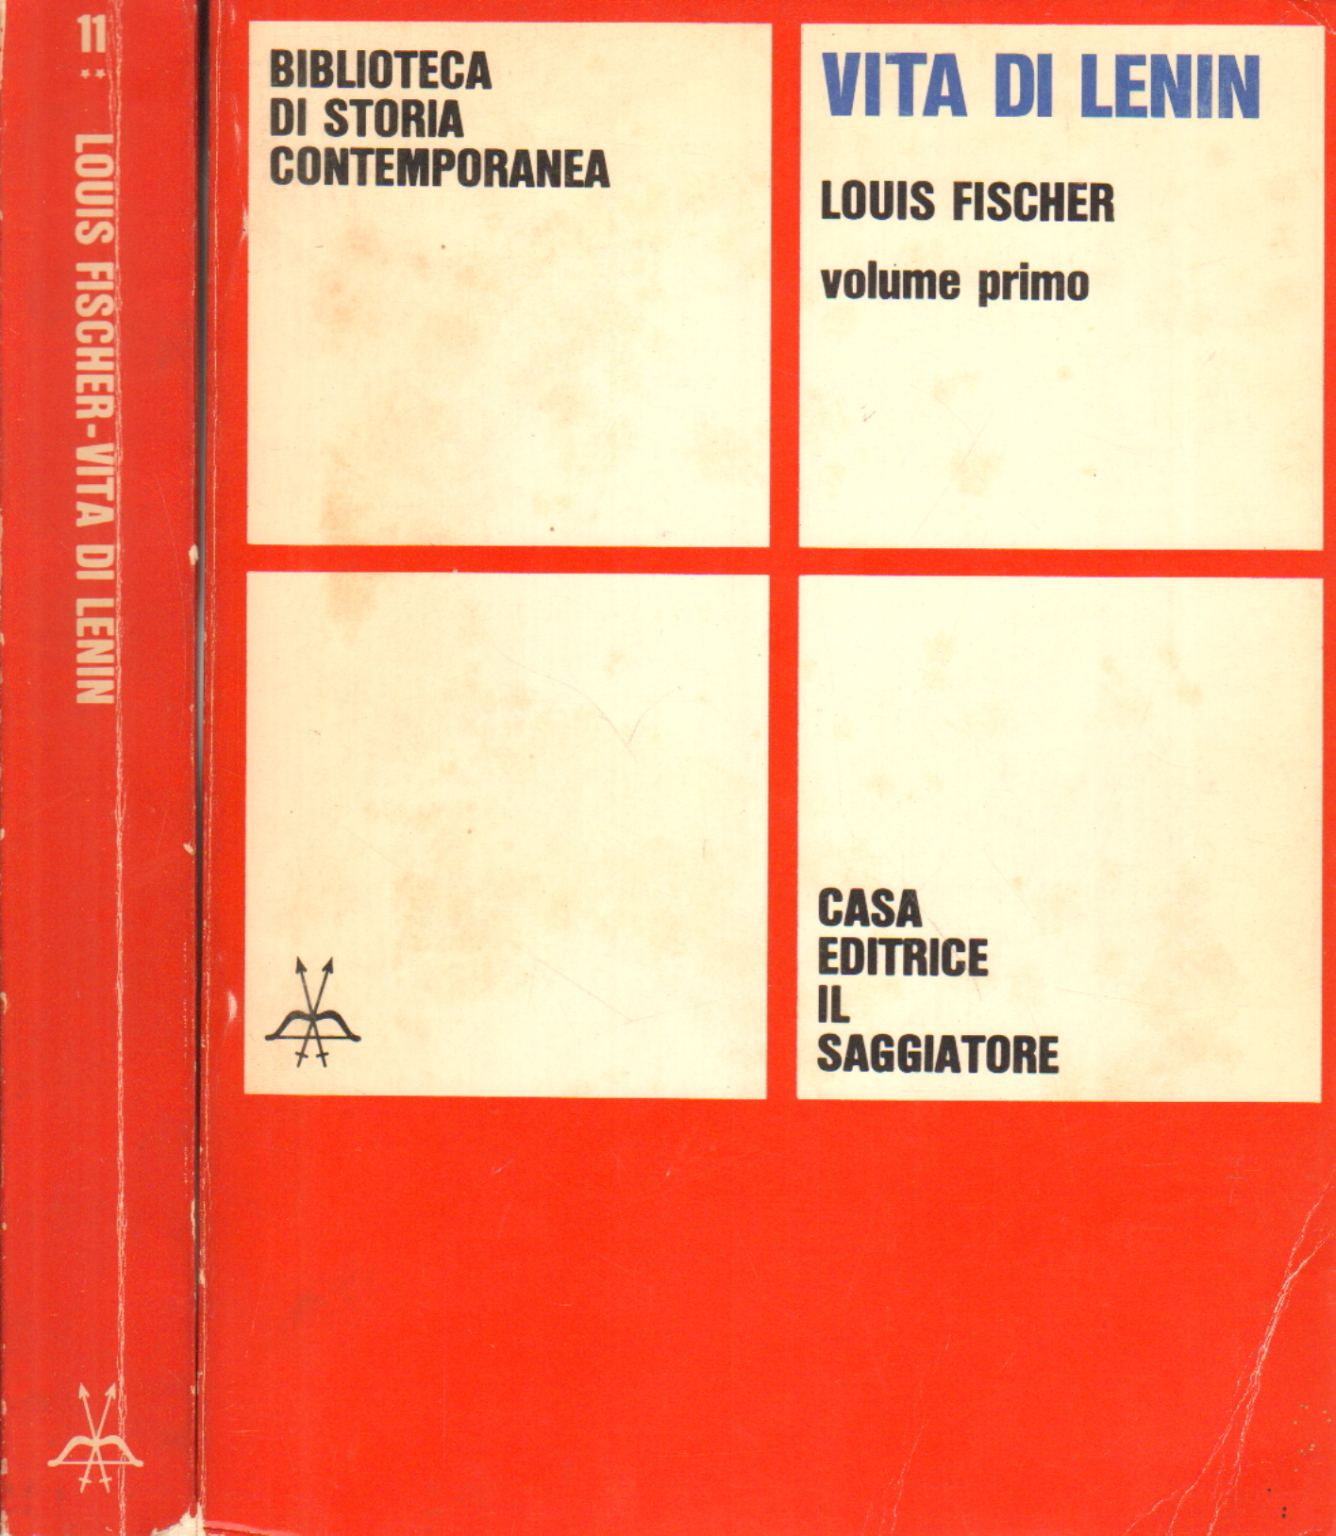 La vida de Lenin (2 volúmenes), Louis Fischer